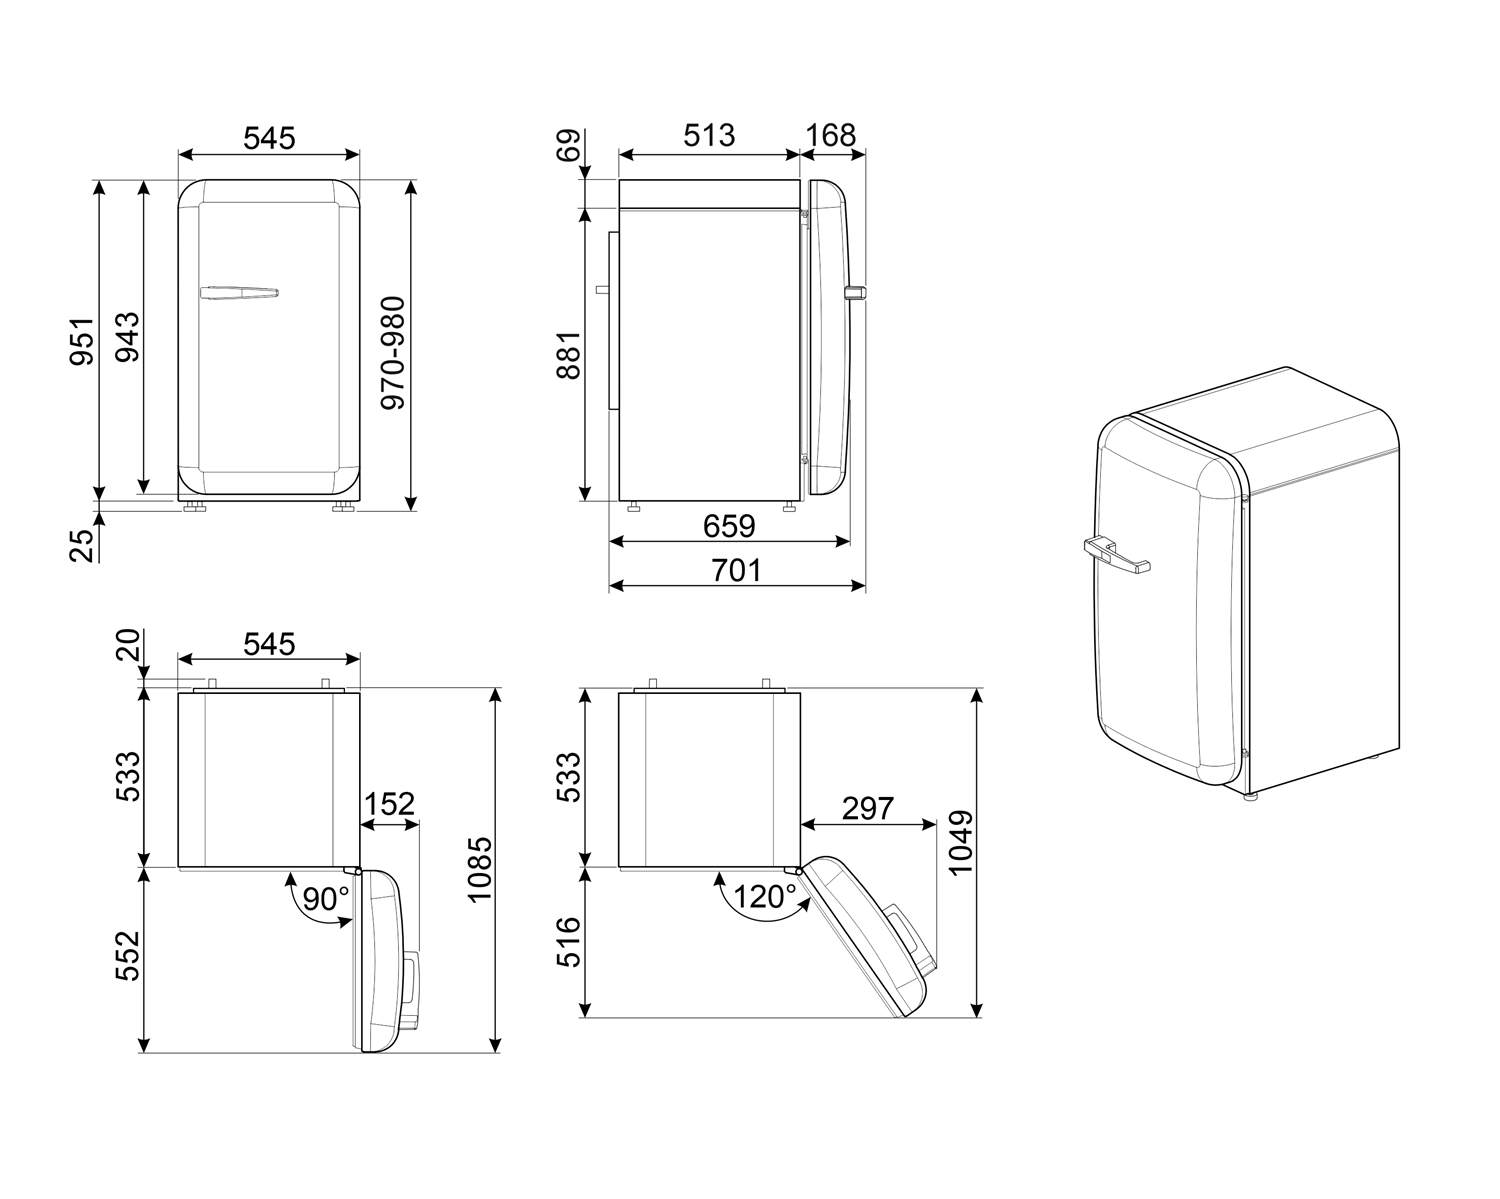 Maattekening SMEG koelkast tafelmodel rood FAB10RRD5